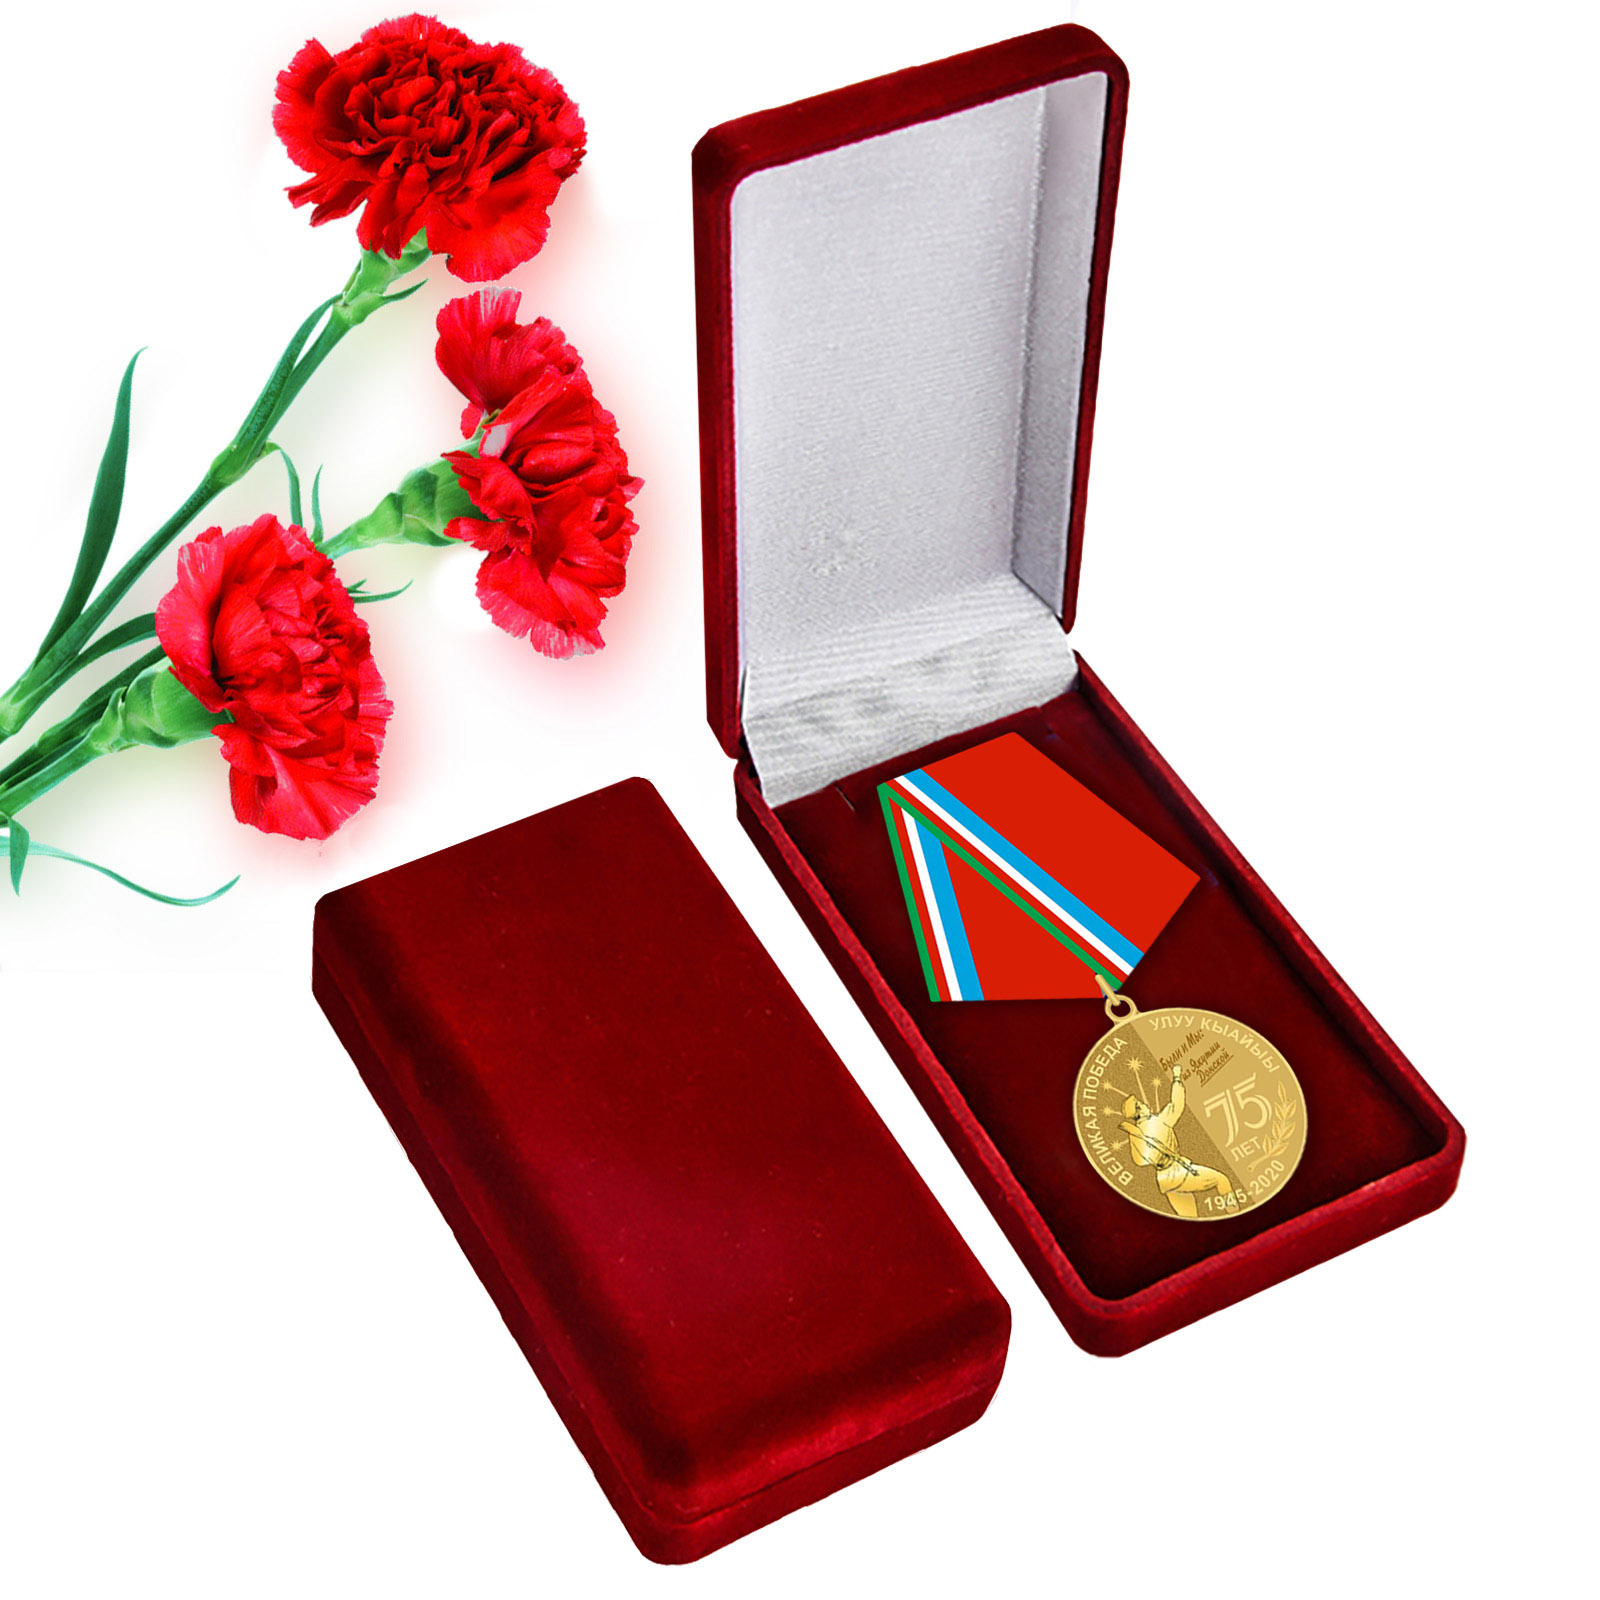 Купить памятную медаль 75 лет Великой Победы Якутия оптом или в розницу